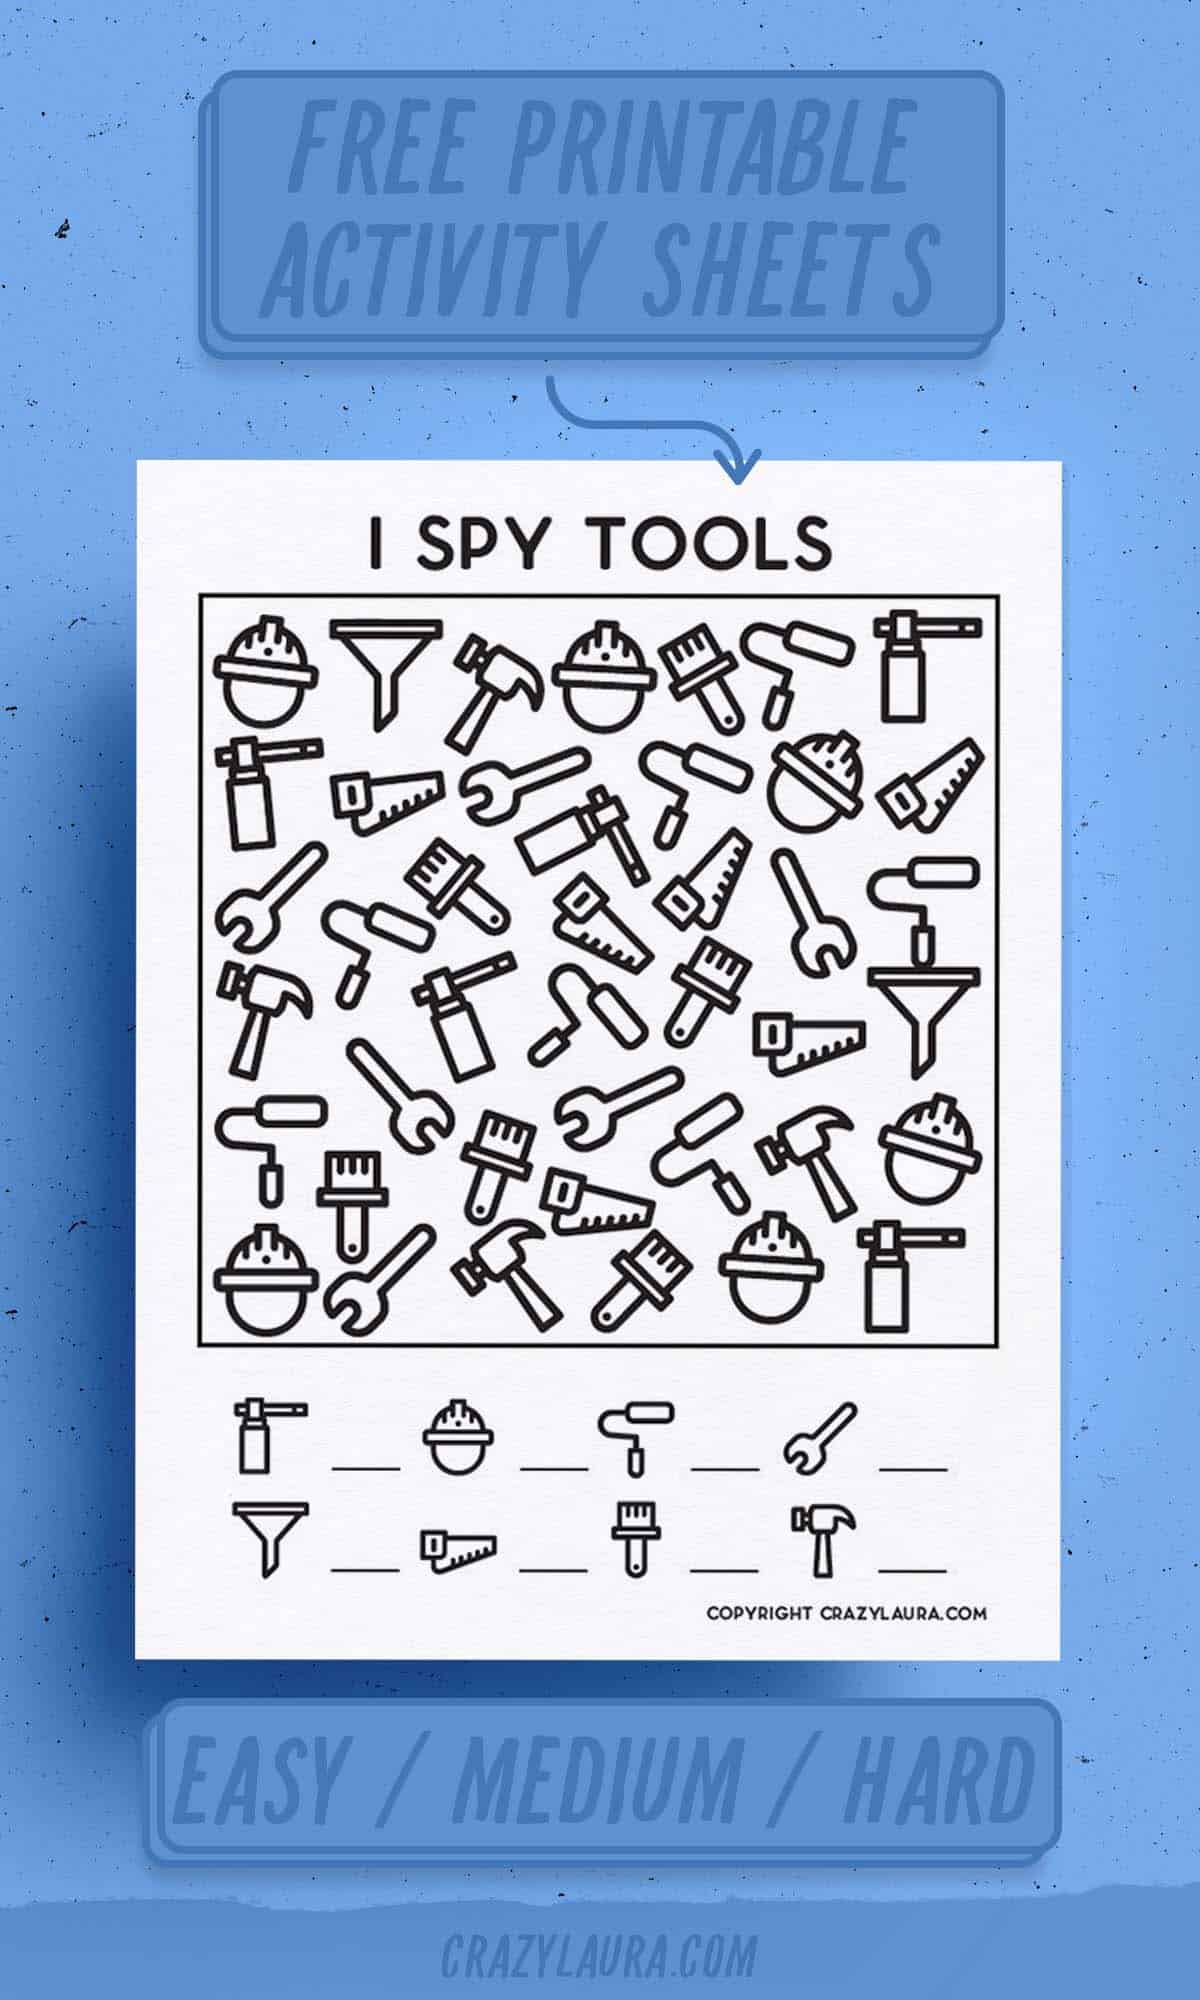 easy i spy games for kids